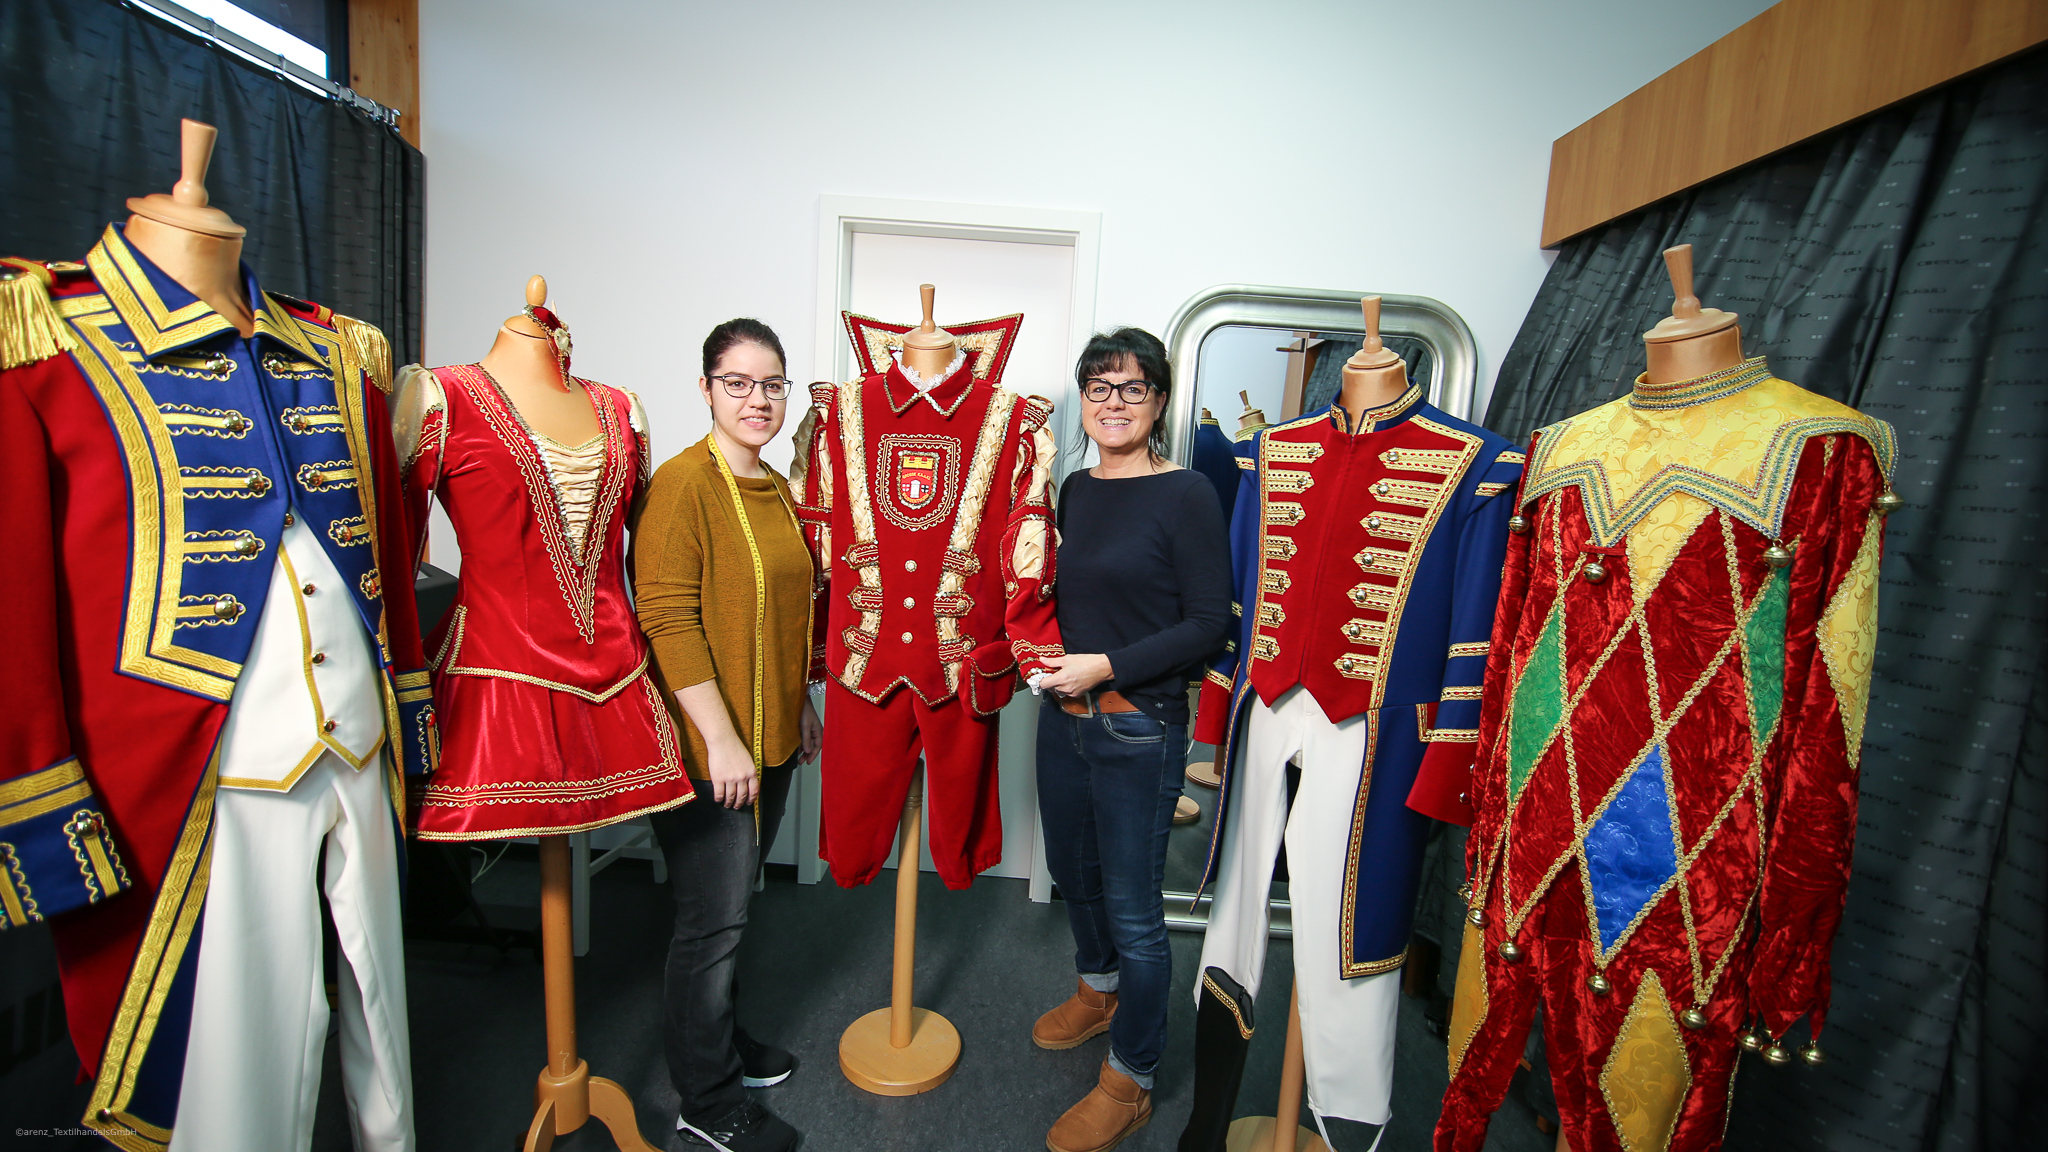 Uniformen aus der Uniformwerkstatt arenz präsentiert von Pia und Sarah Arenz